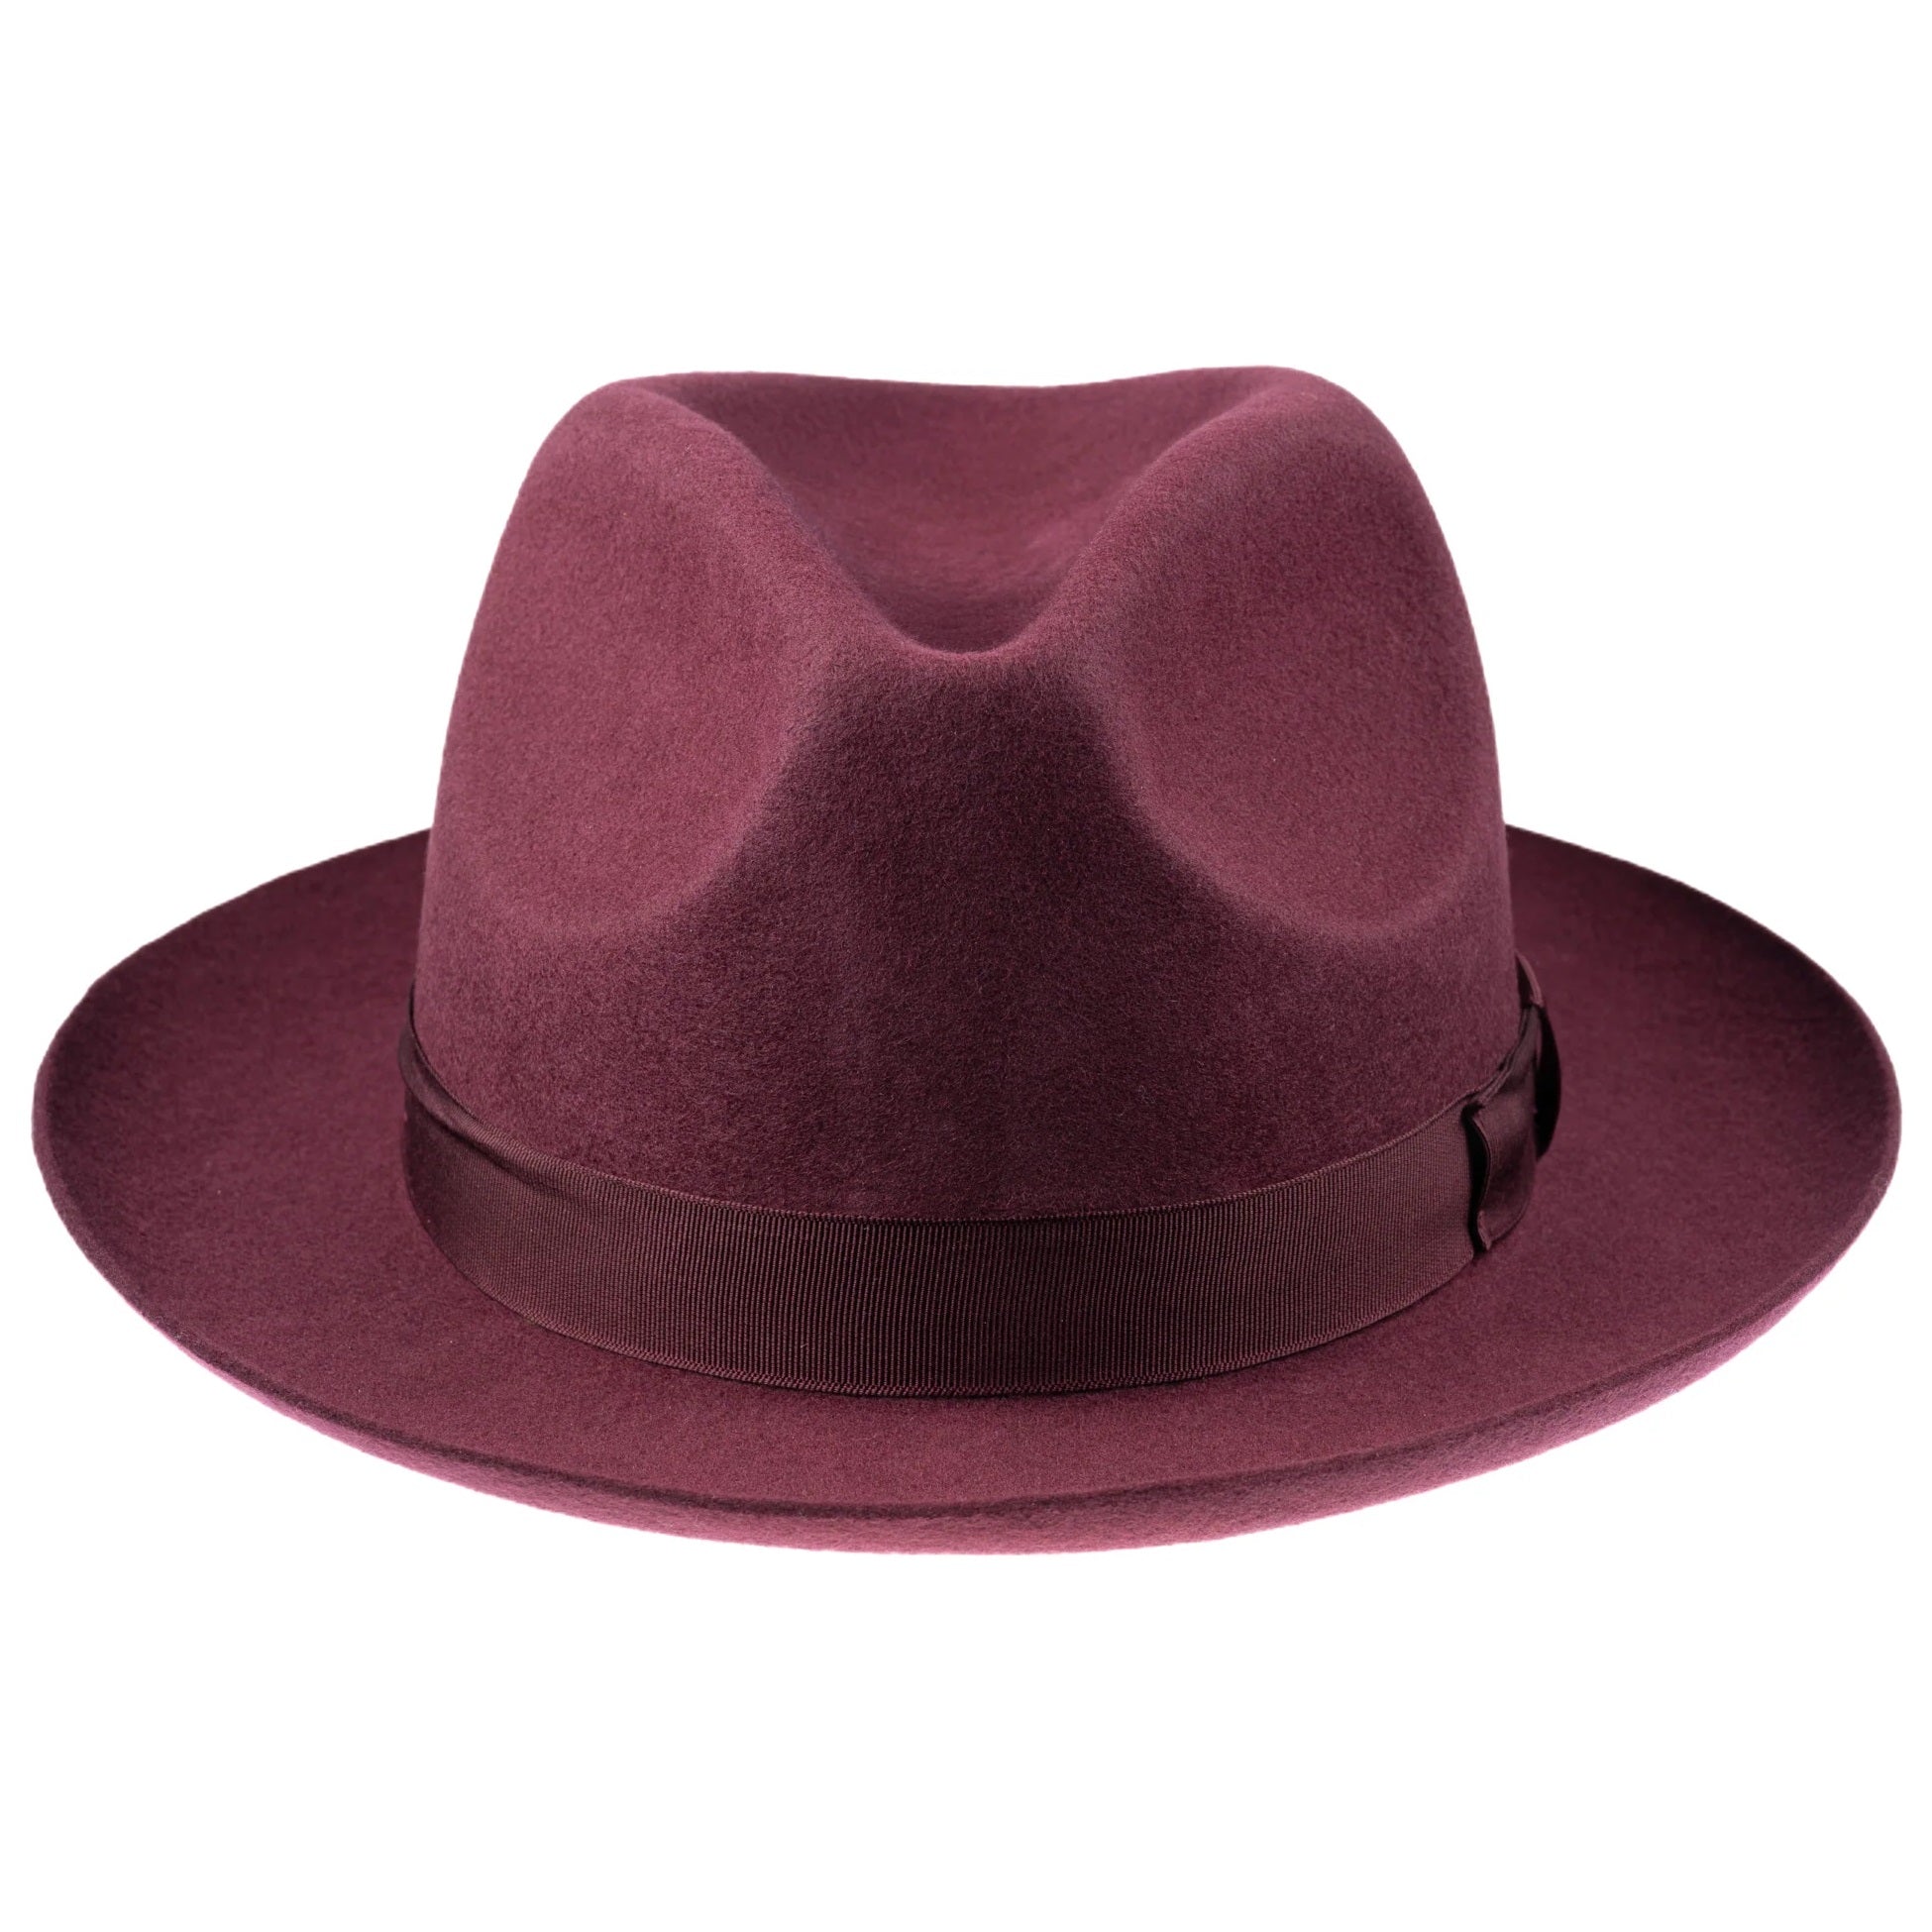 CHRISTYS' Chepstow Wool Felt Fedora Hat - Maroon